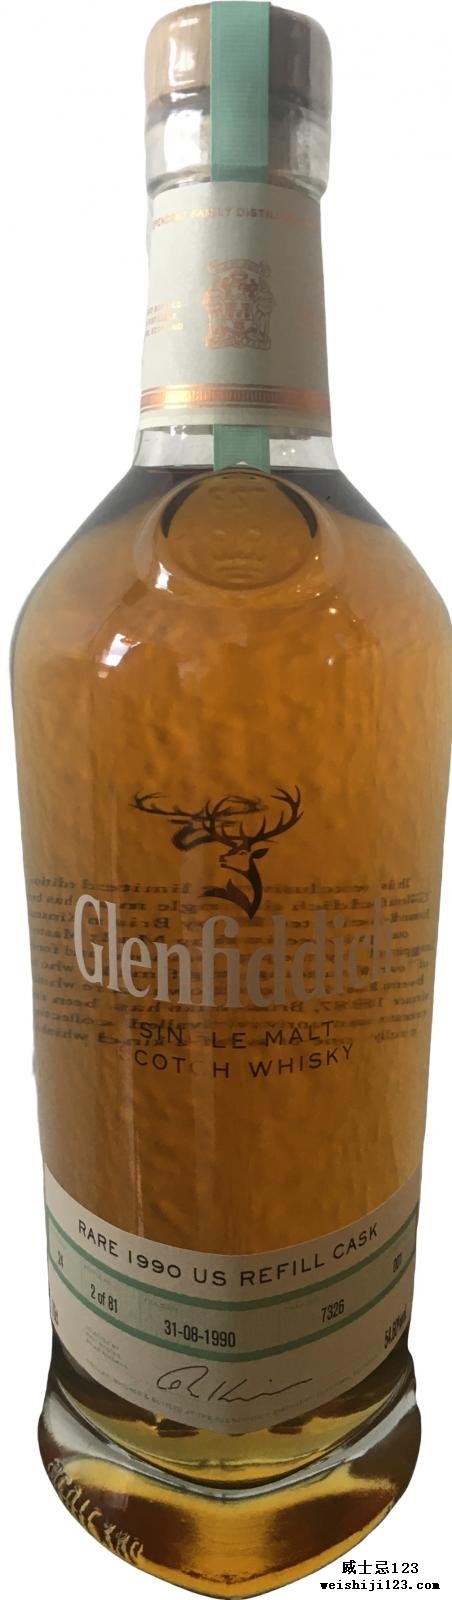 Glenfiddich 1990